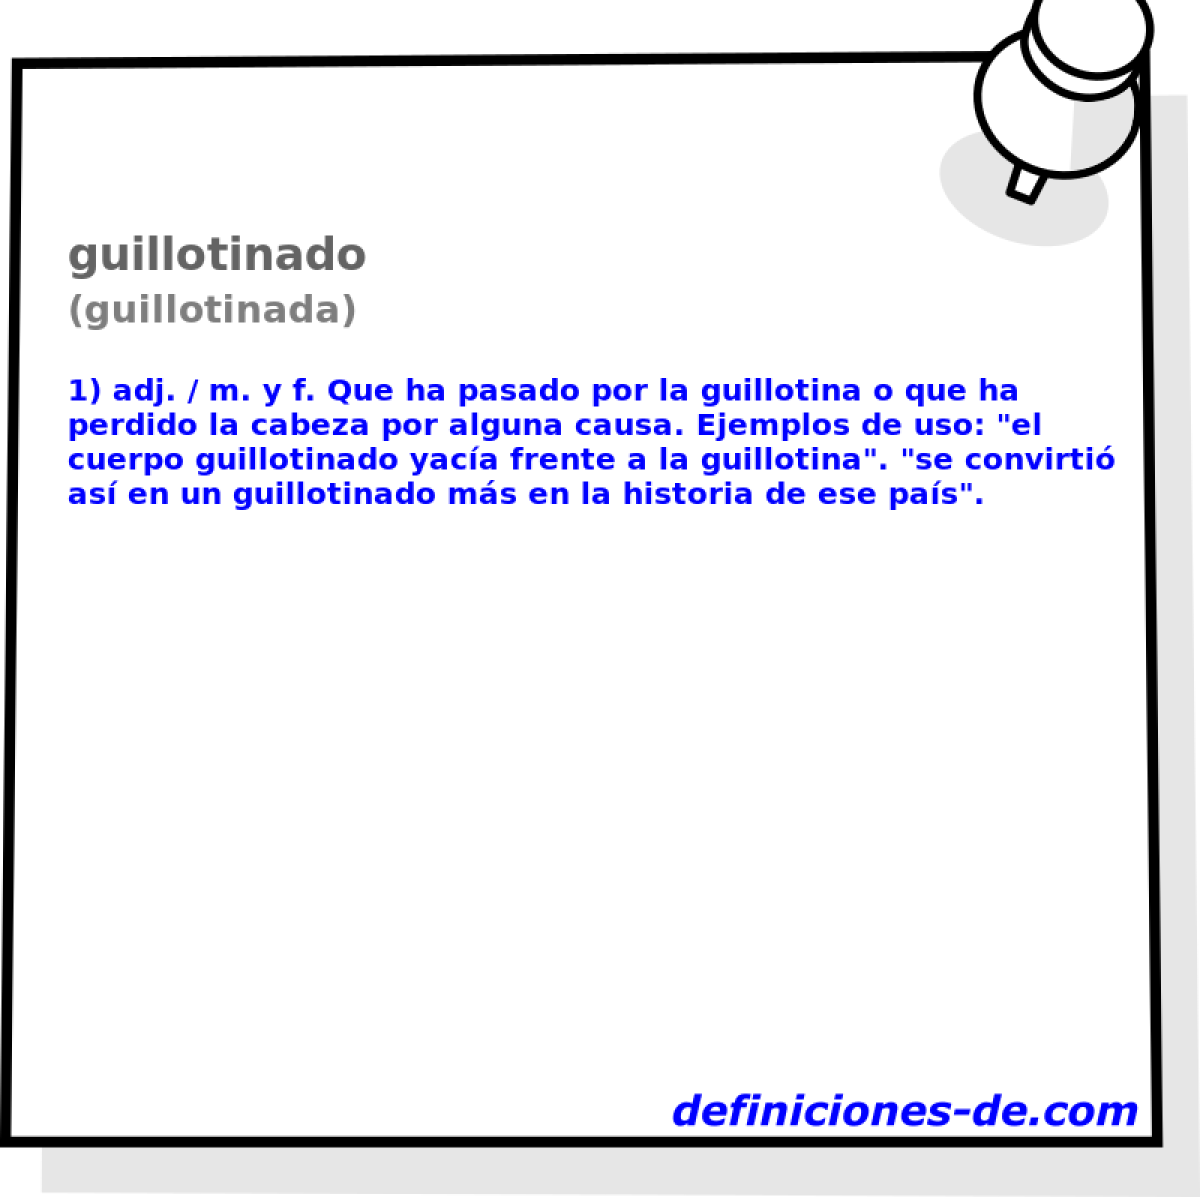 guillotinado (guillotinada)